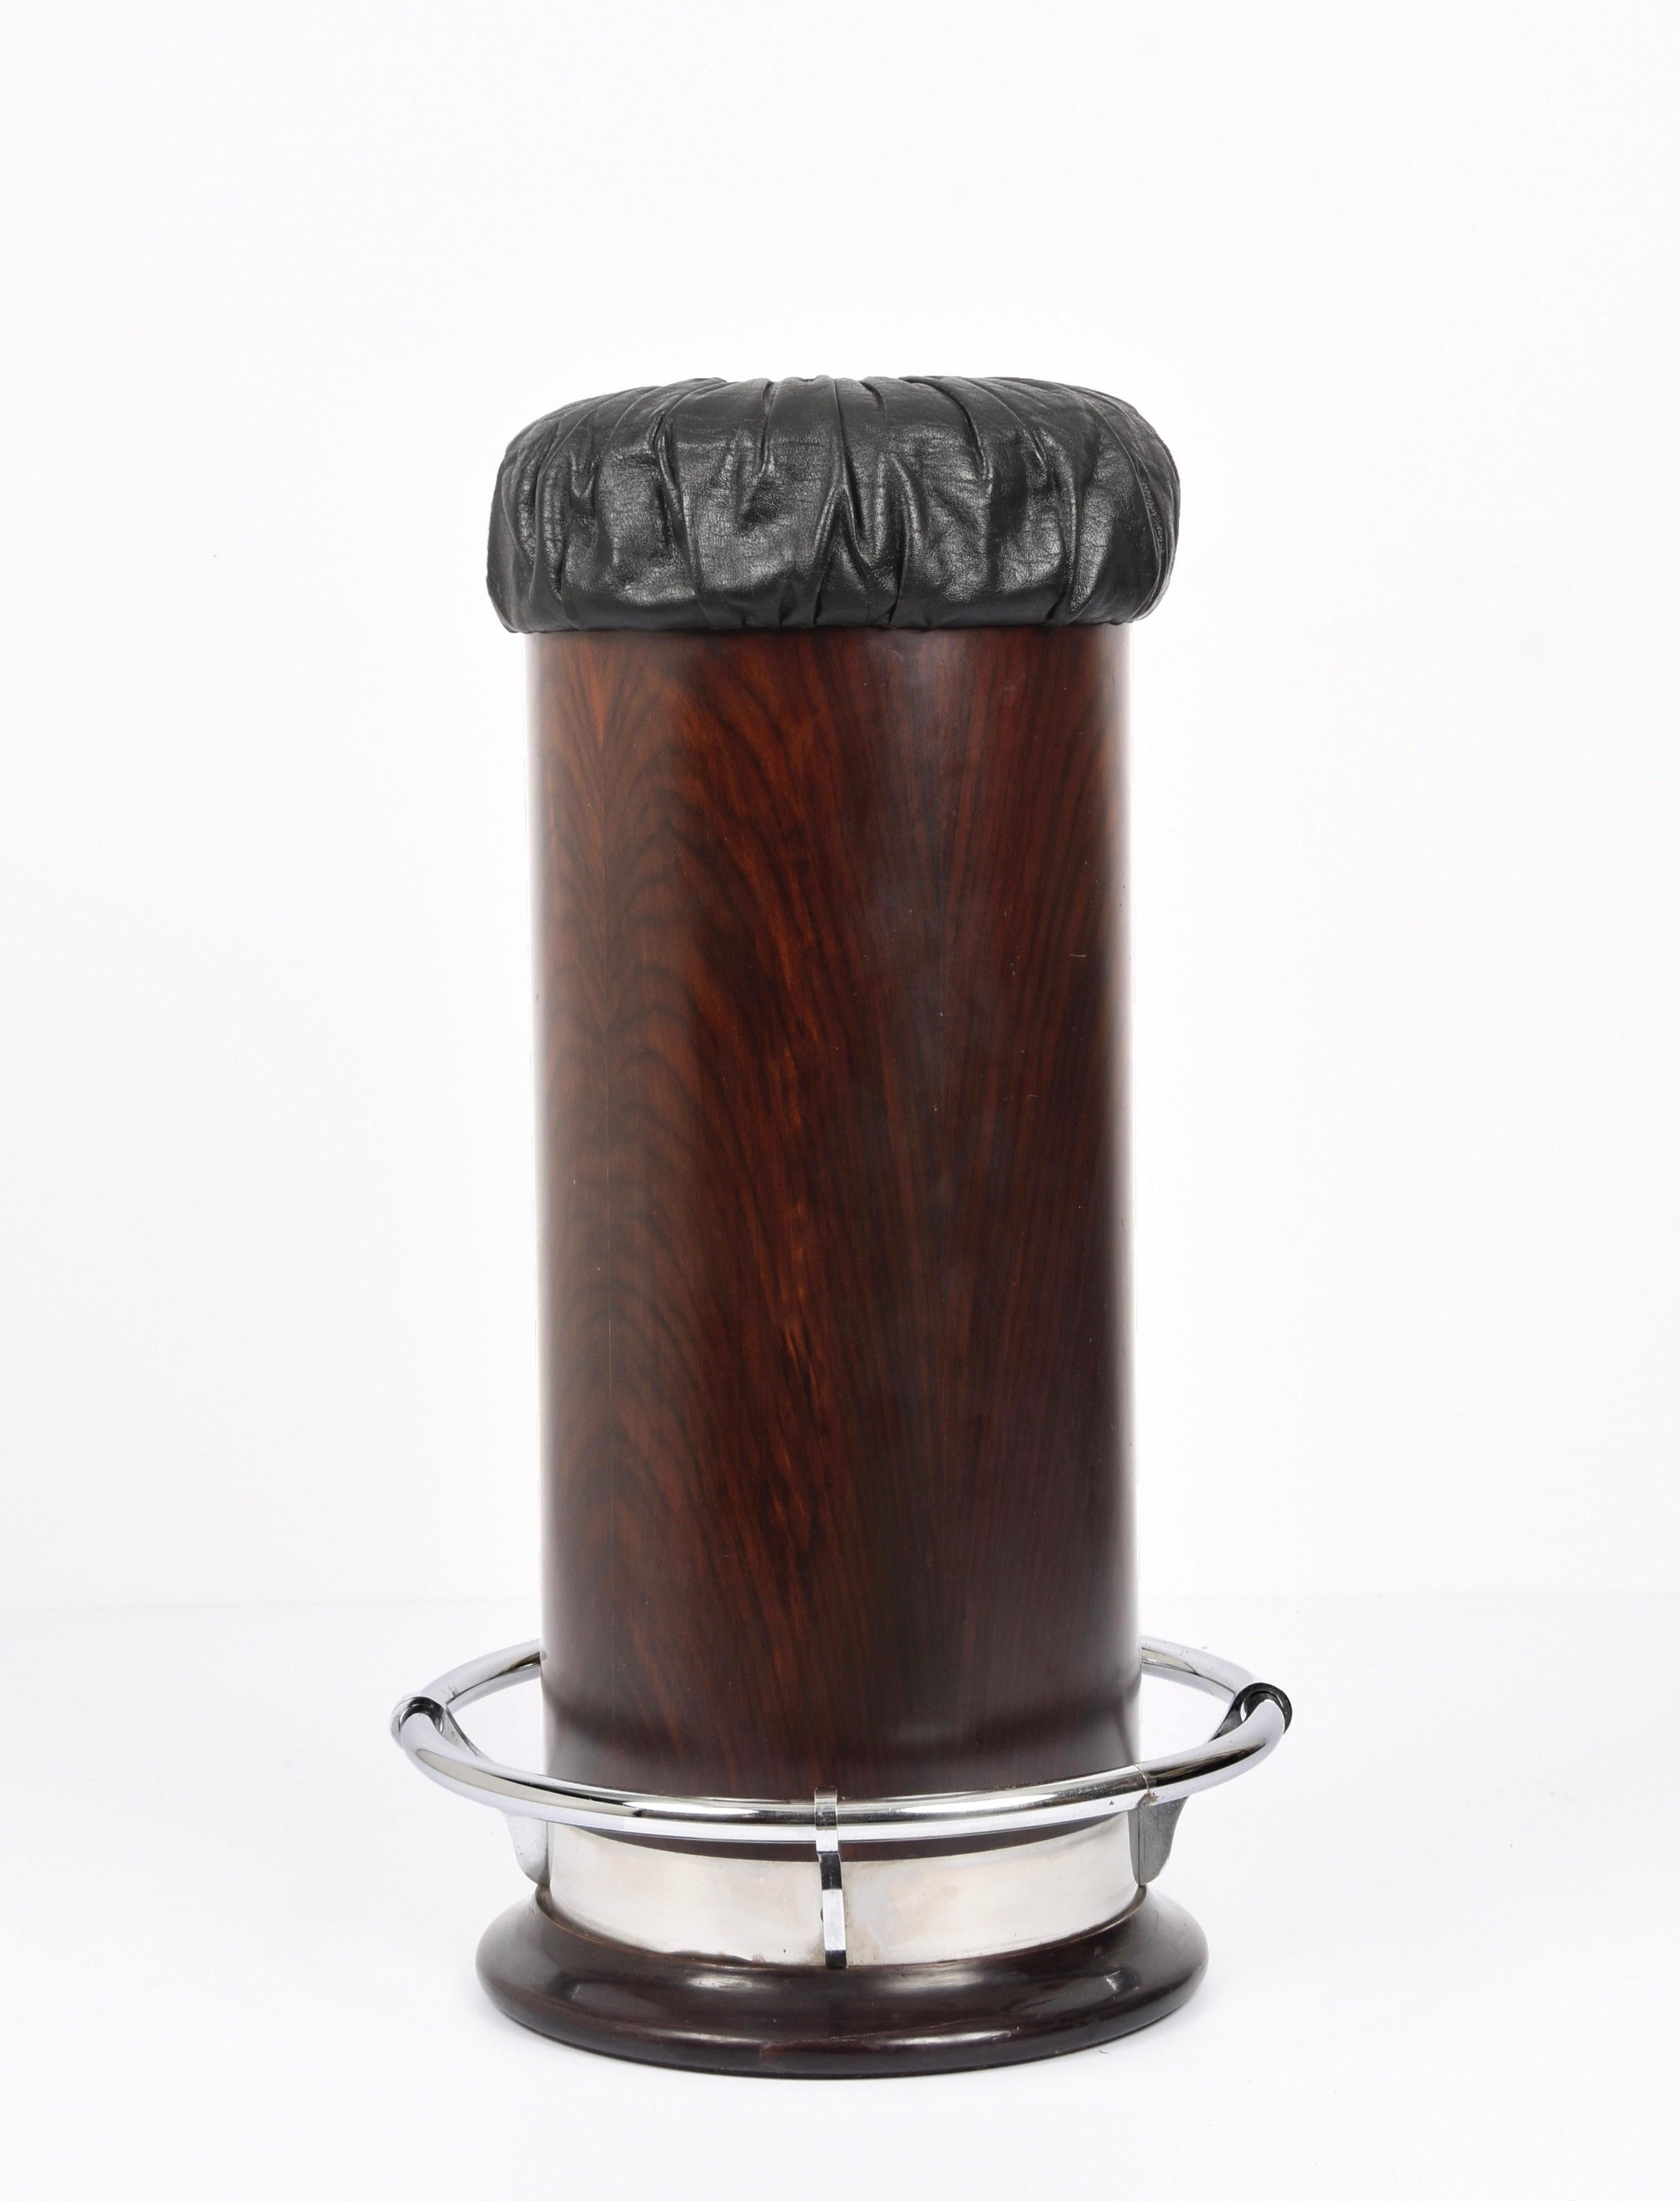 Fantastischer Barhocker aus Holz, verchromtem Metall und schwarzem Leder mit Fußstütze. Dieser fantastische Gegenstand wurde in den 1930er Jahren in Frankreich entworfen.

Der Mix aus schwarzem Vintage-Leder, glänzend verchromter Metallfußstütze